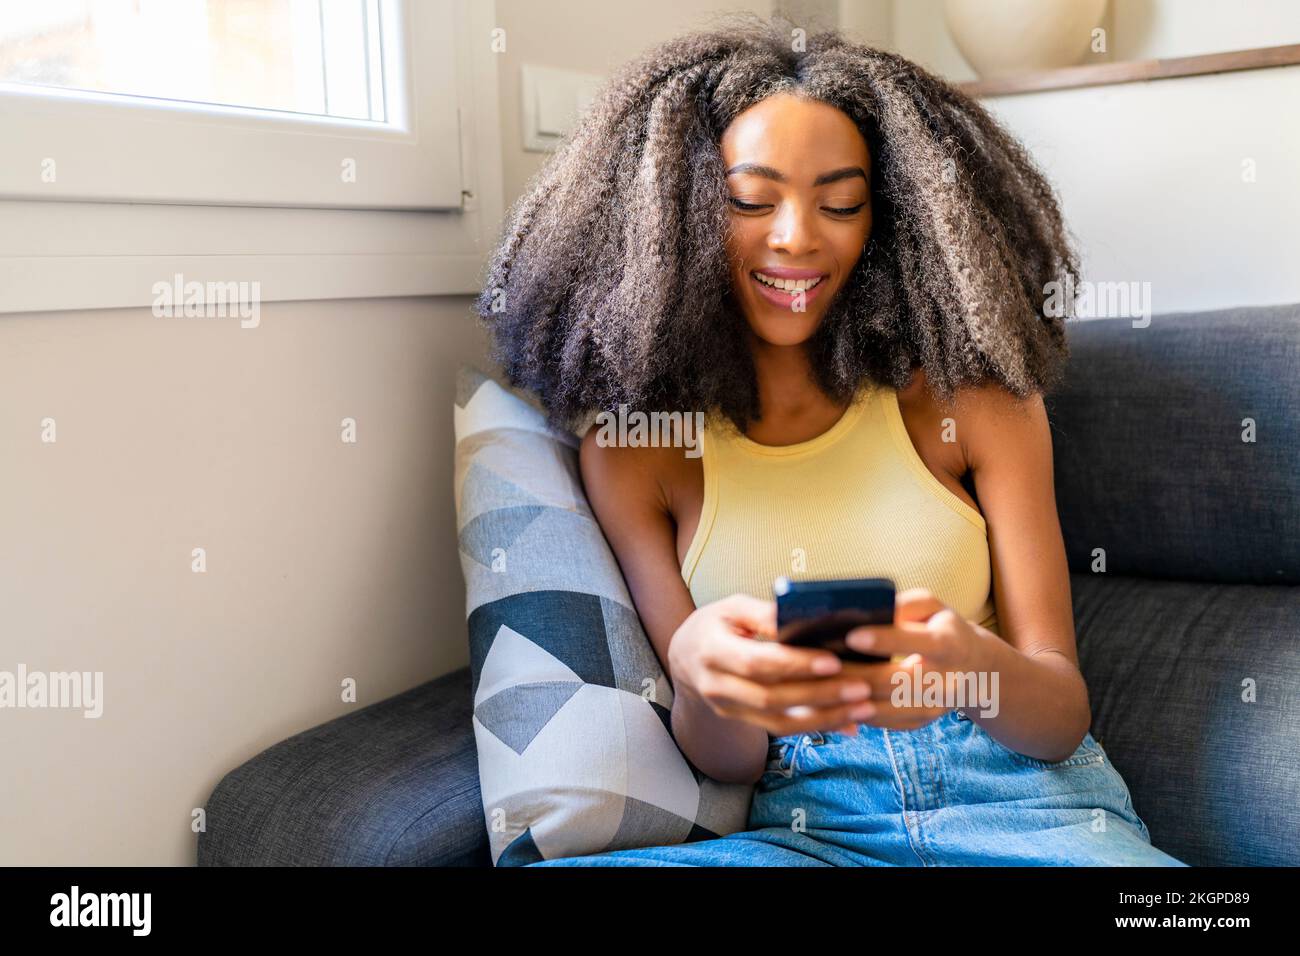 Eine Frau mit Afro-Haarschnitt, die zu Hause ein Handy benutzt Stockfoto